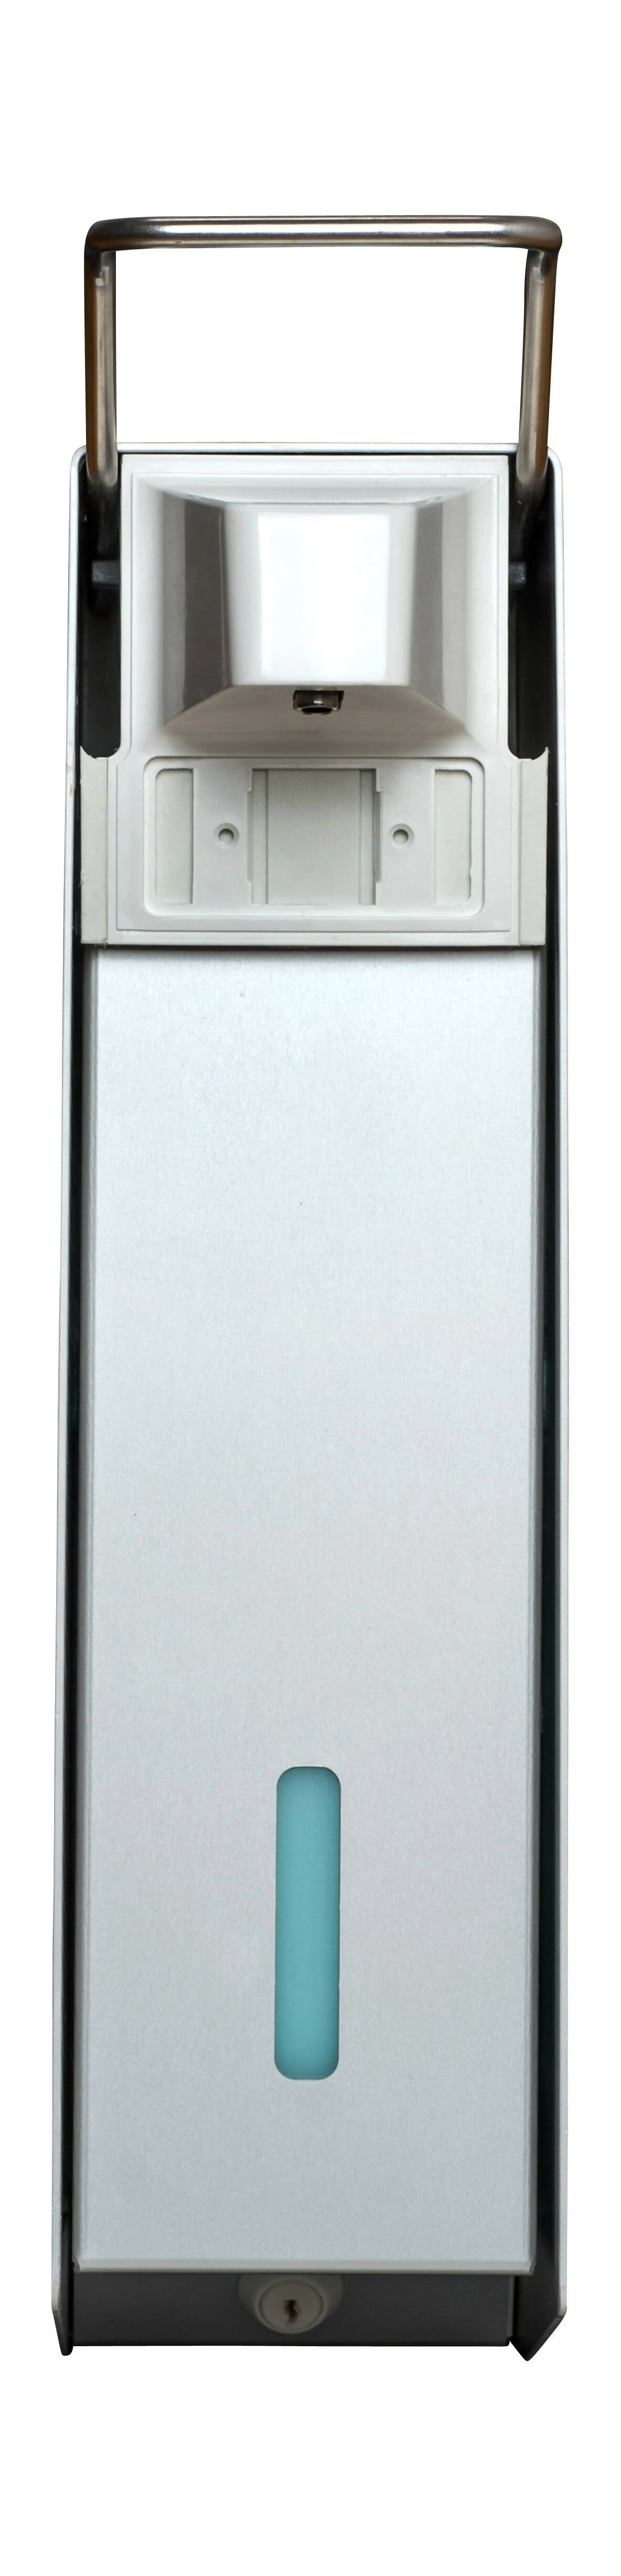 SORIFA - 2er-Set - Robuster, ergonomischer, abschließbarer Wandspender aus Metall für 2,5L-Flasche der Marke SORIFA - Für Gele und Flüssigseifen. - 0